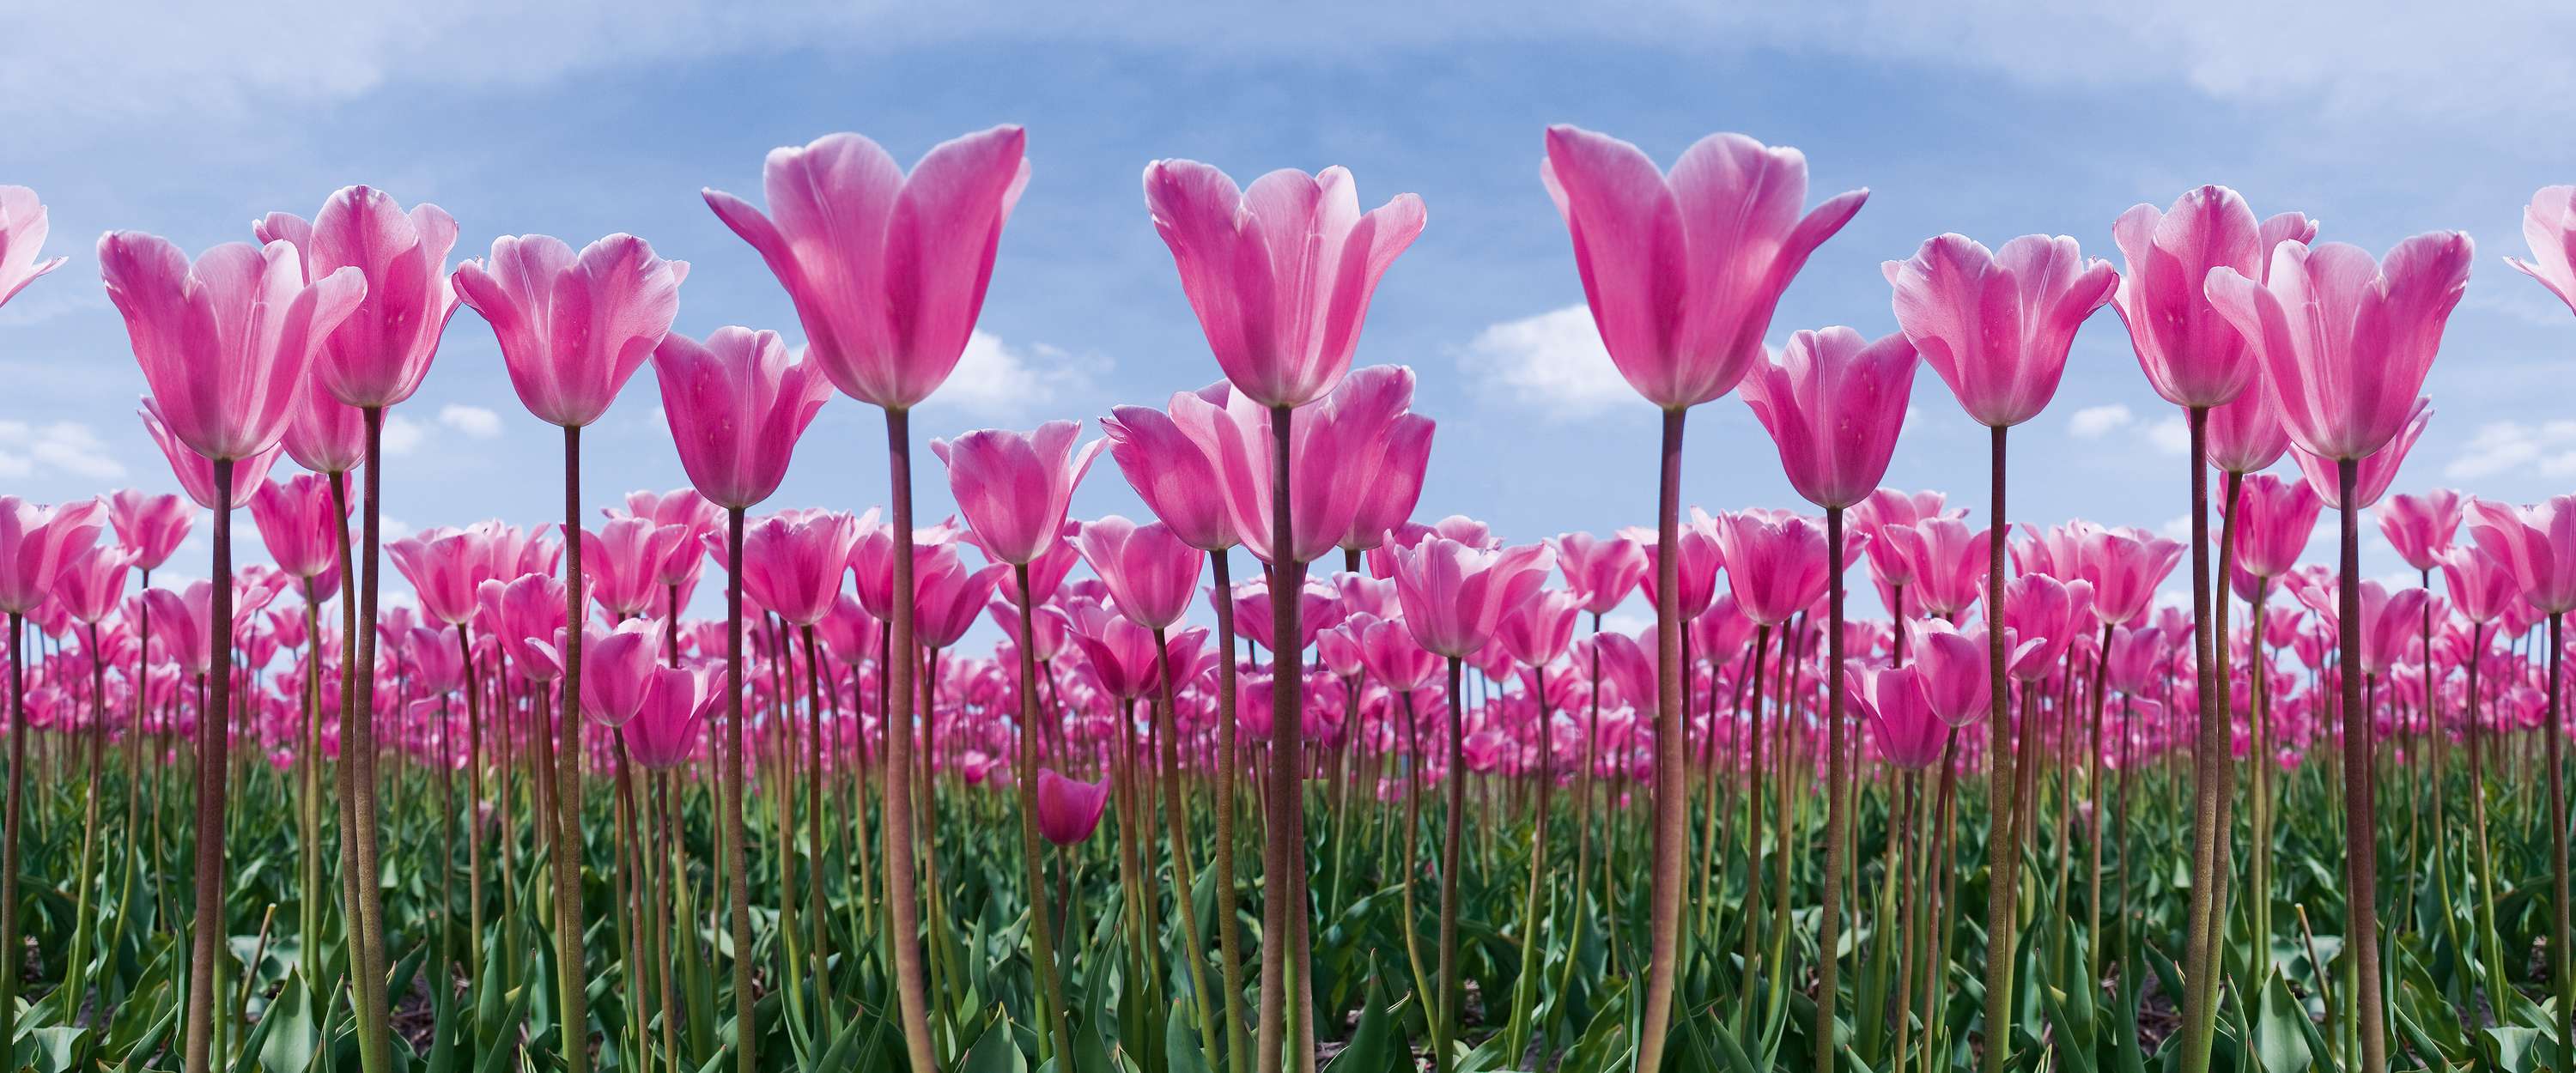             Campo di tulipani - Fiori con tulipani rosa carta da parati
        